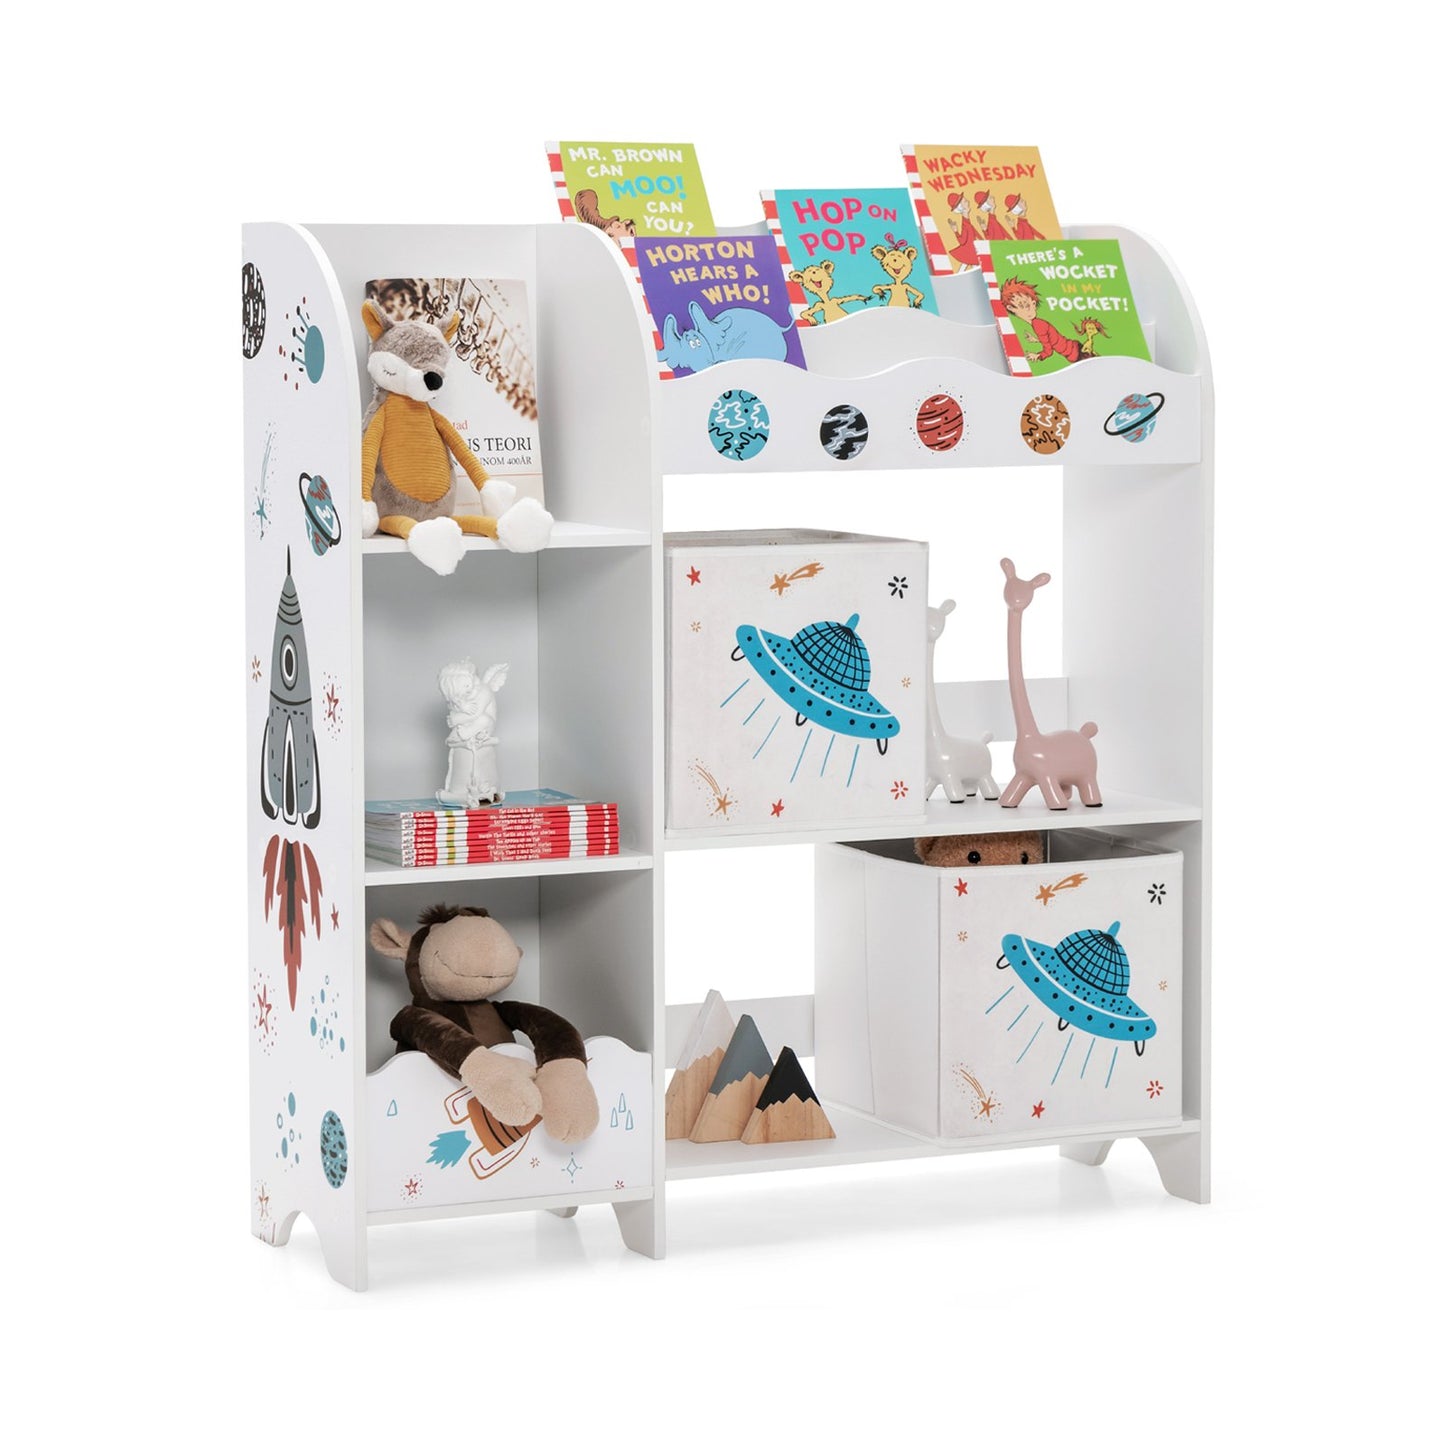 Kids Toy and Book Organizer Children Wooden Storage Cabinet with Storage Bins, White at Gallery Canada